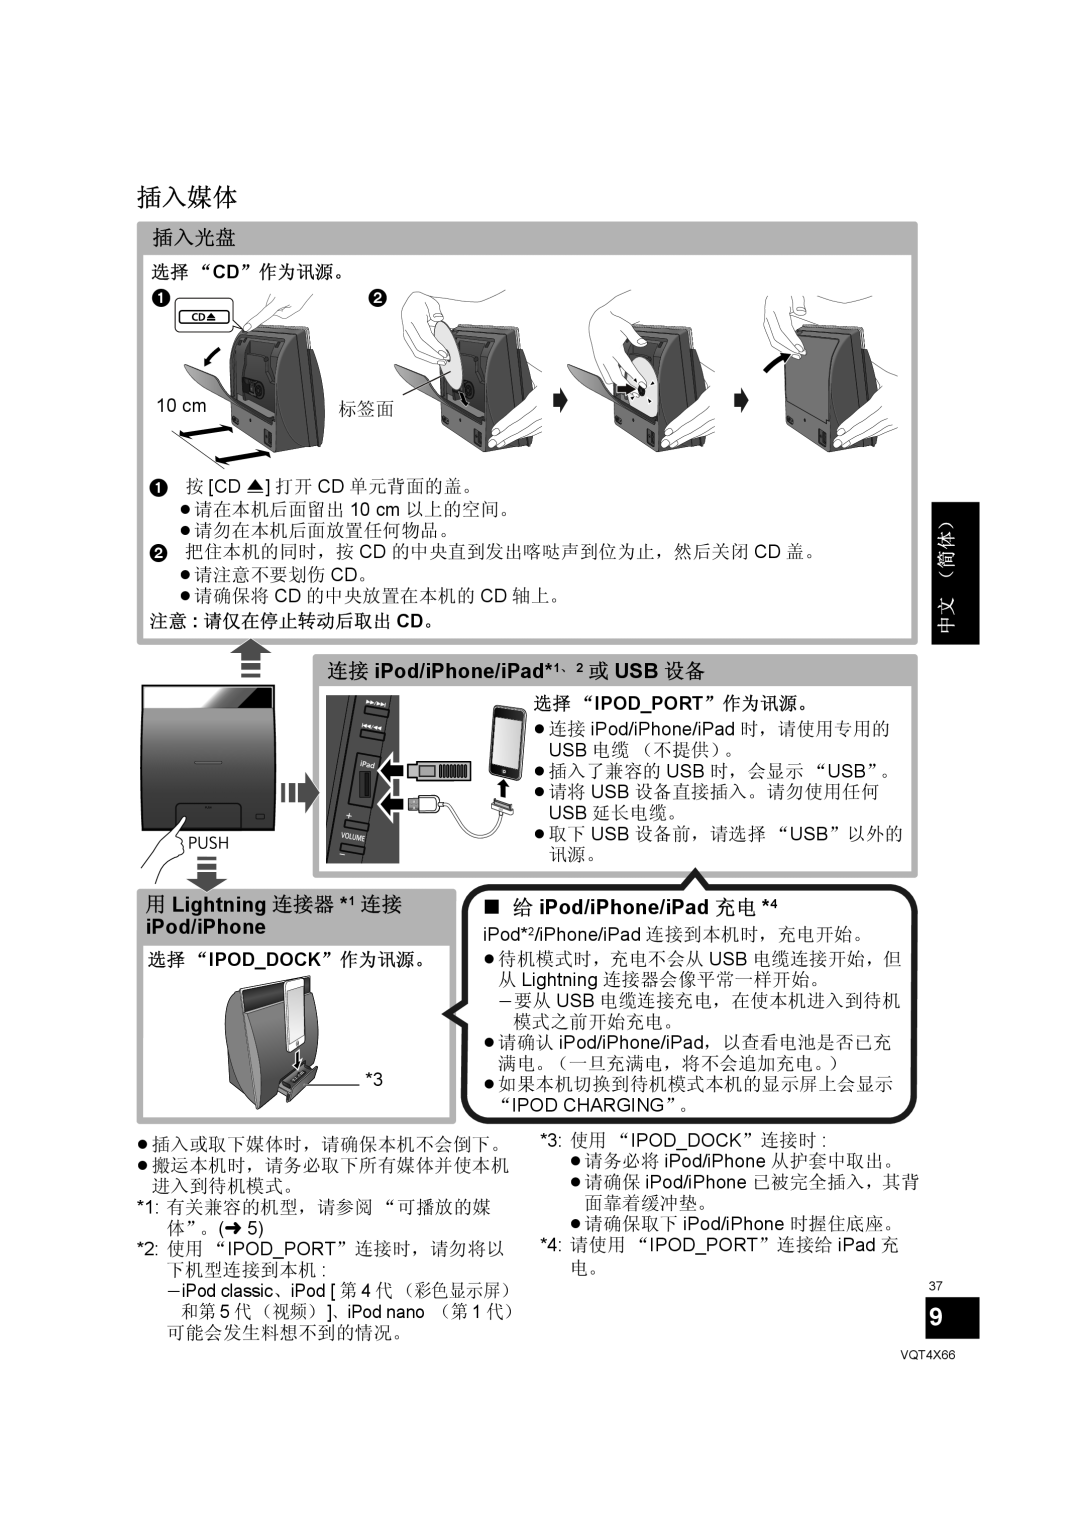 Panasonic SC-NE5 插入媒体, 插入光盘, 连接 iPod/iPhone/iPad*1、 2 或 USB 设备, 用 Lightning 连接器 *1 连接 iPod/iPhone, （简体） 